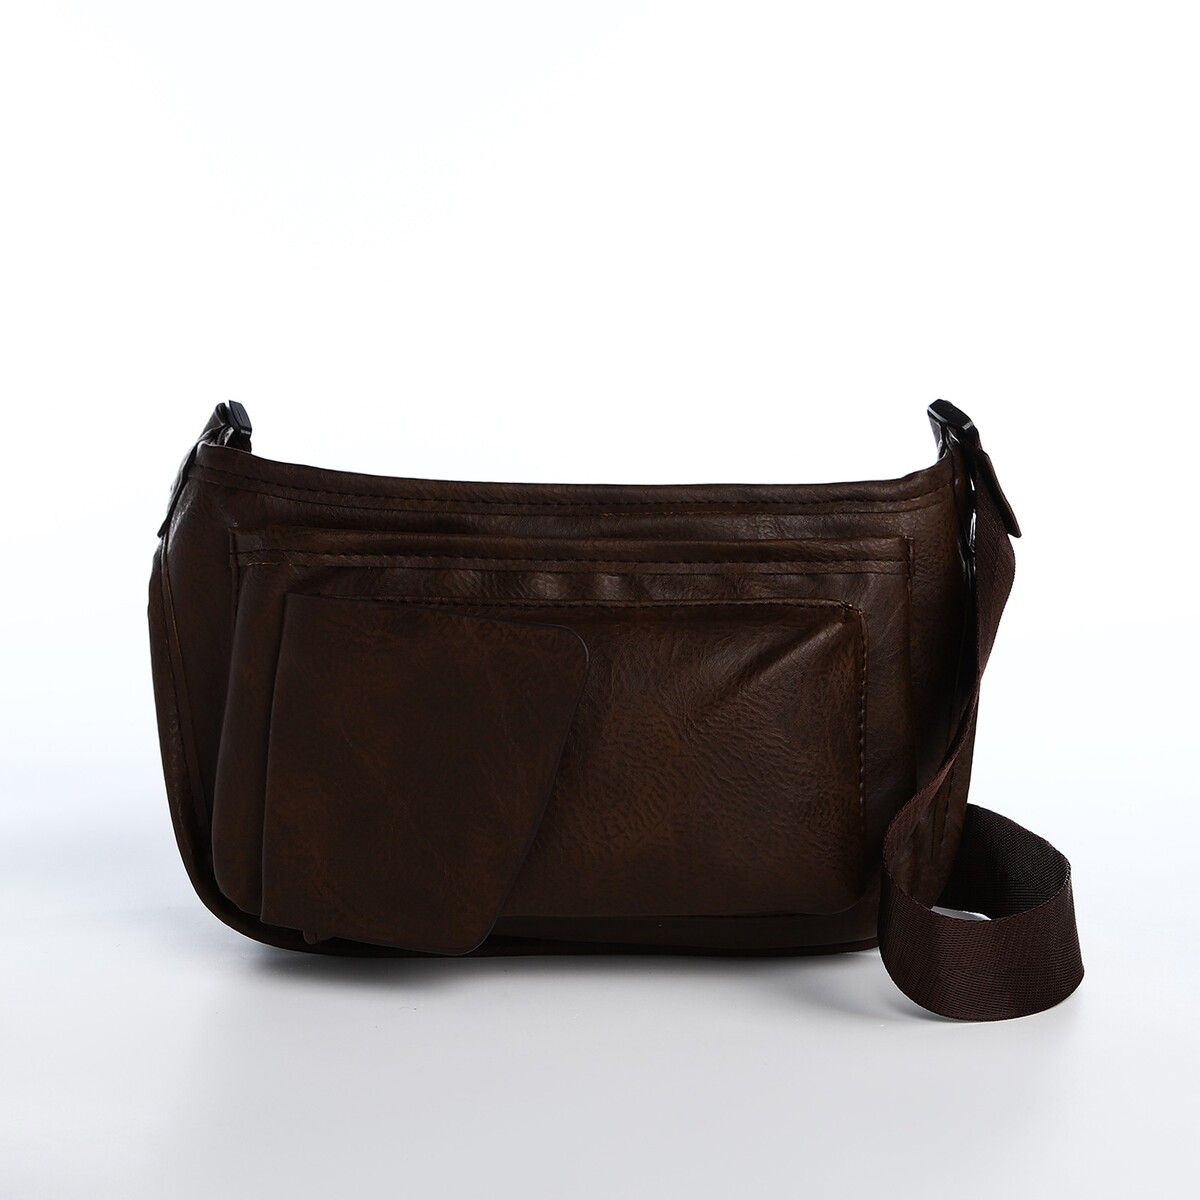 Поясная сумка на молнии, 3 наружных кармана, цвет коричневый рюкзак школьный из текстиля на молнии 3 кармана пенал коричневый оранжевый